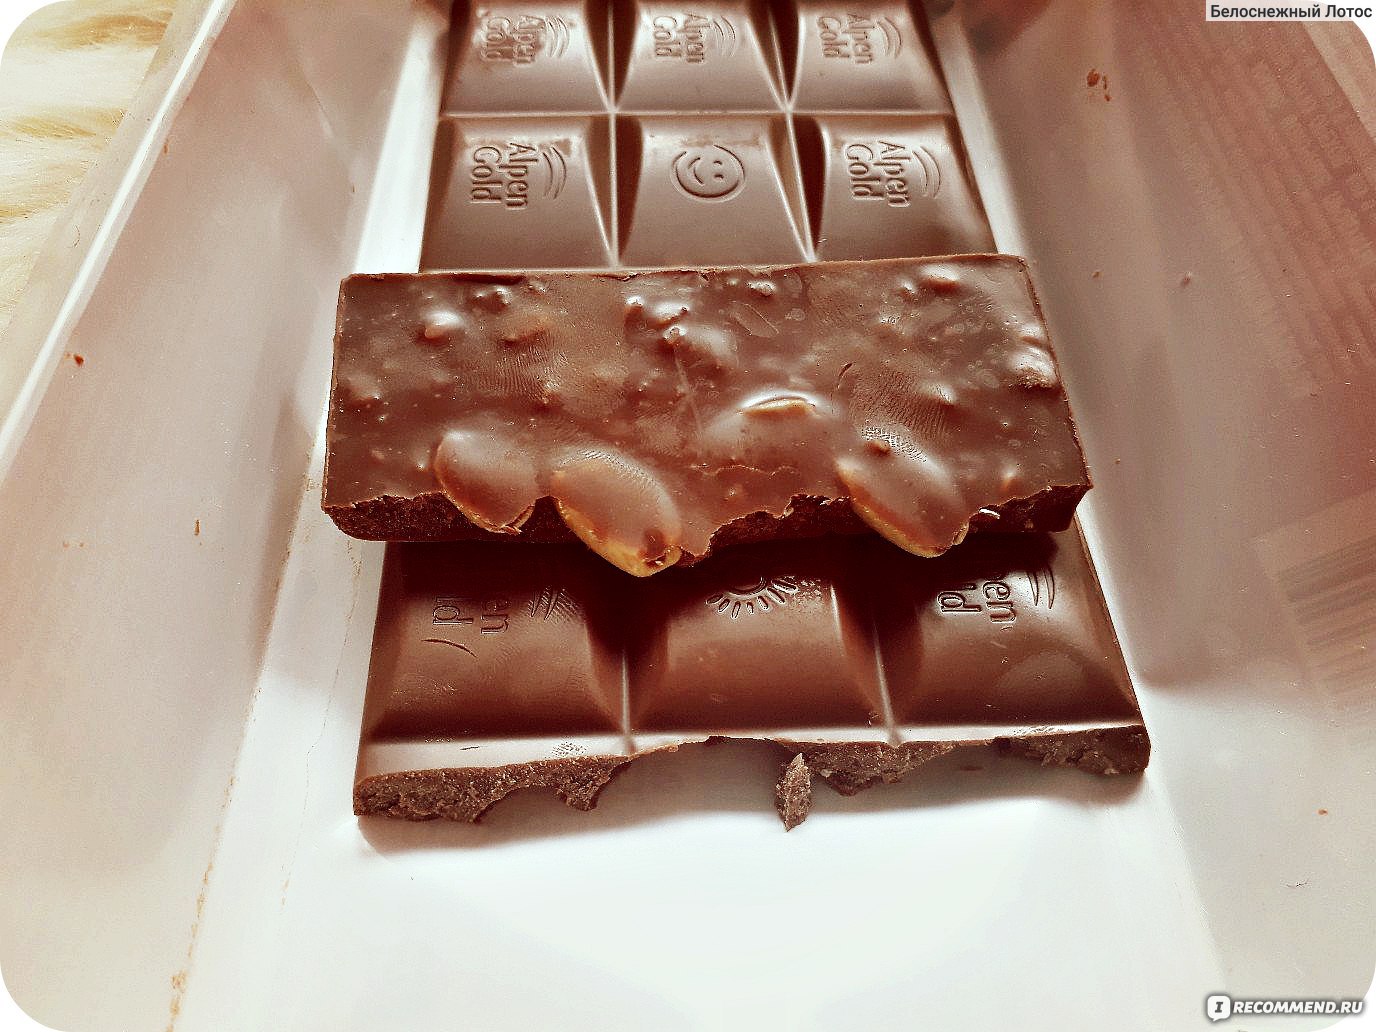 Грамм в дольке шоколада. Долька шоколада. Разгрузочная на шоколаде. Шоколадный разгрузочный день. Шоколад 25 грамм.